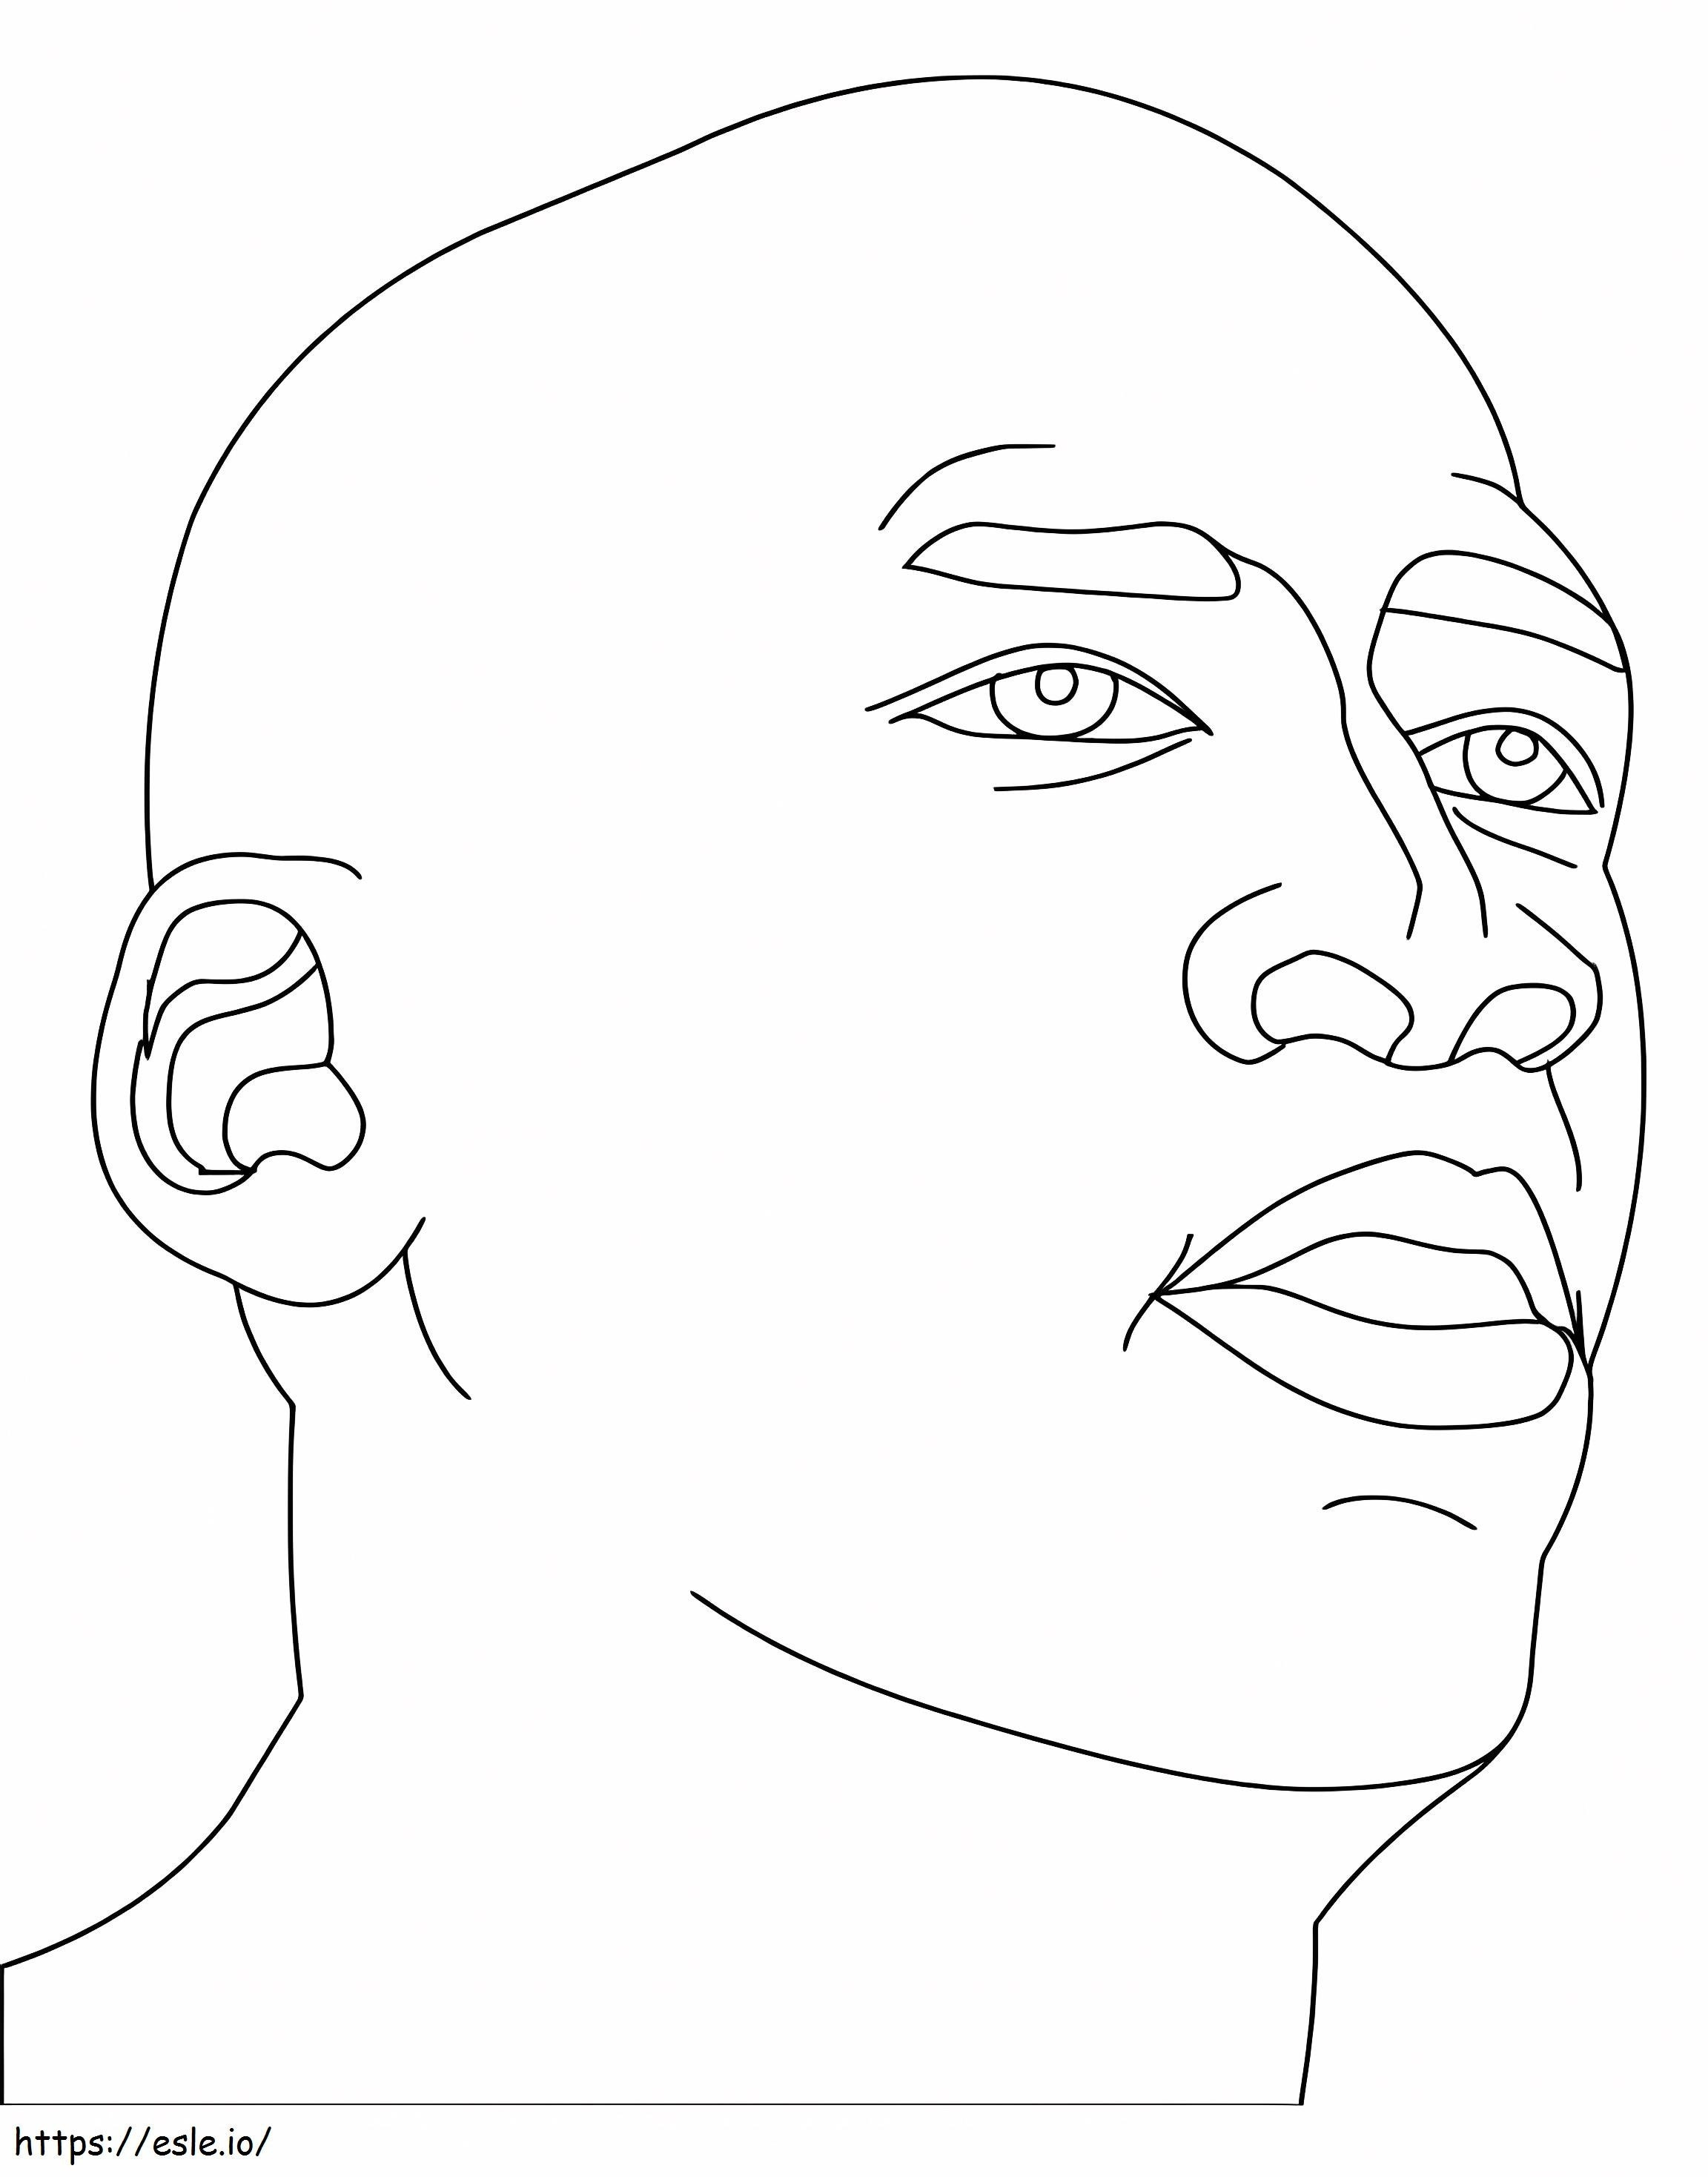 Coloriage Le visage de Michael Jordan à imprimer dessin